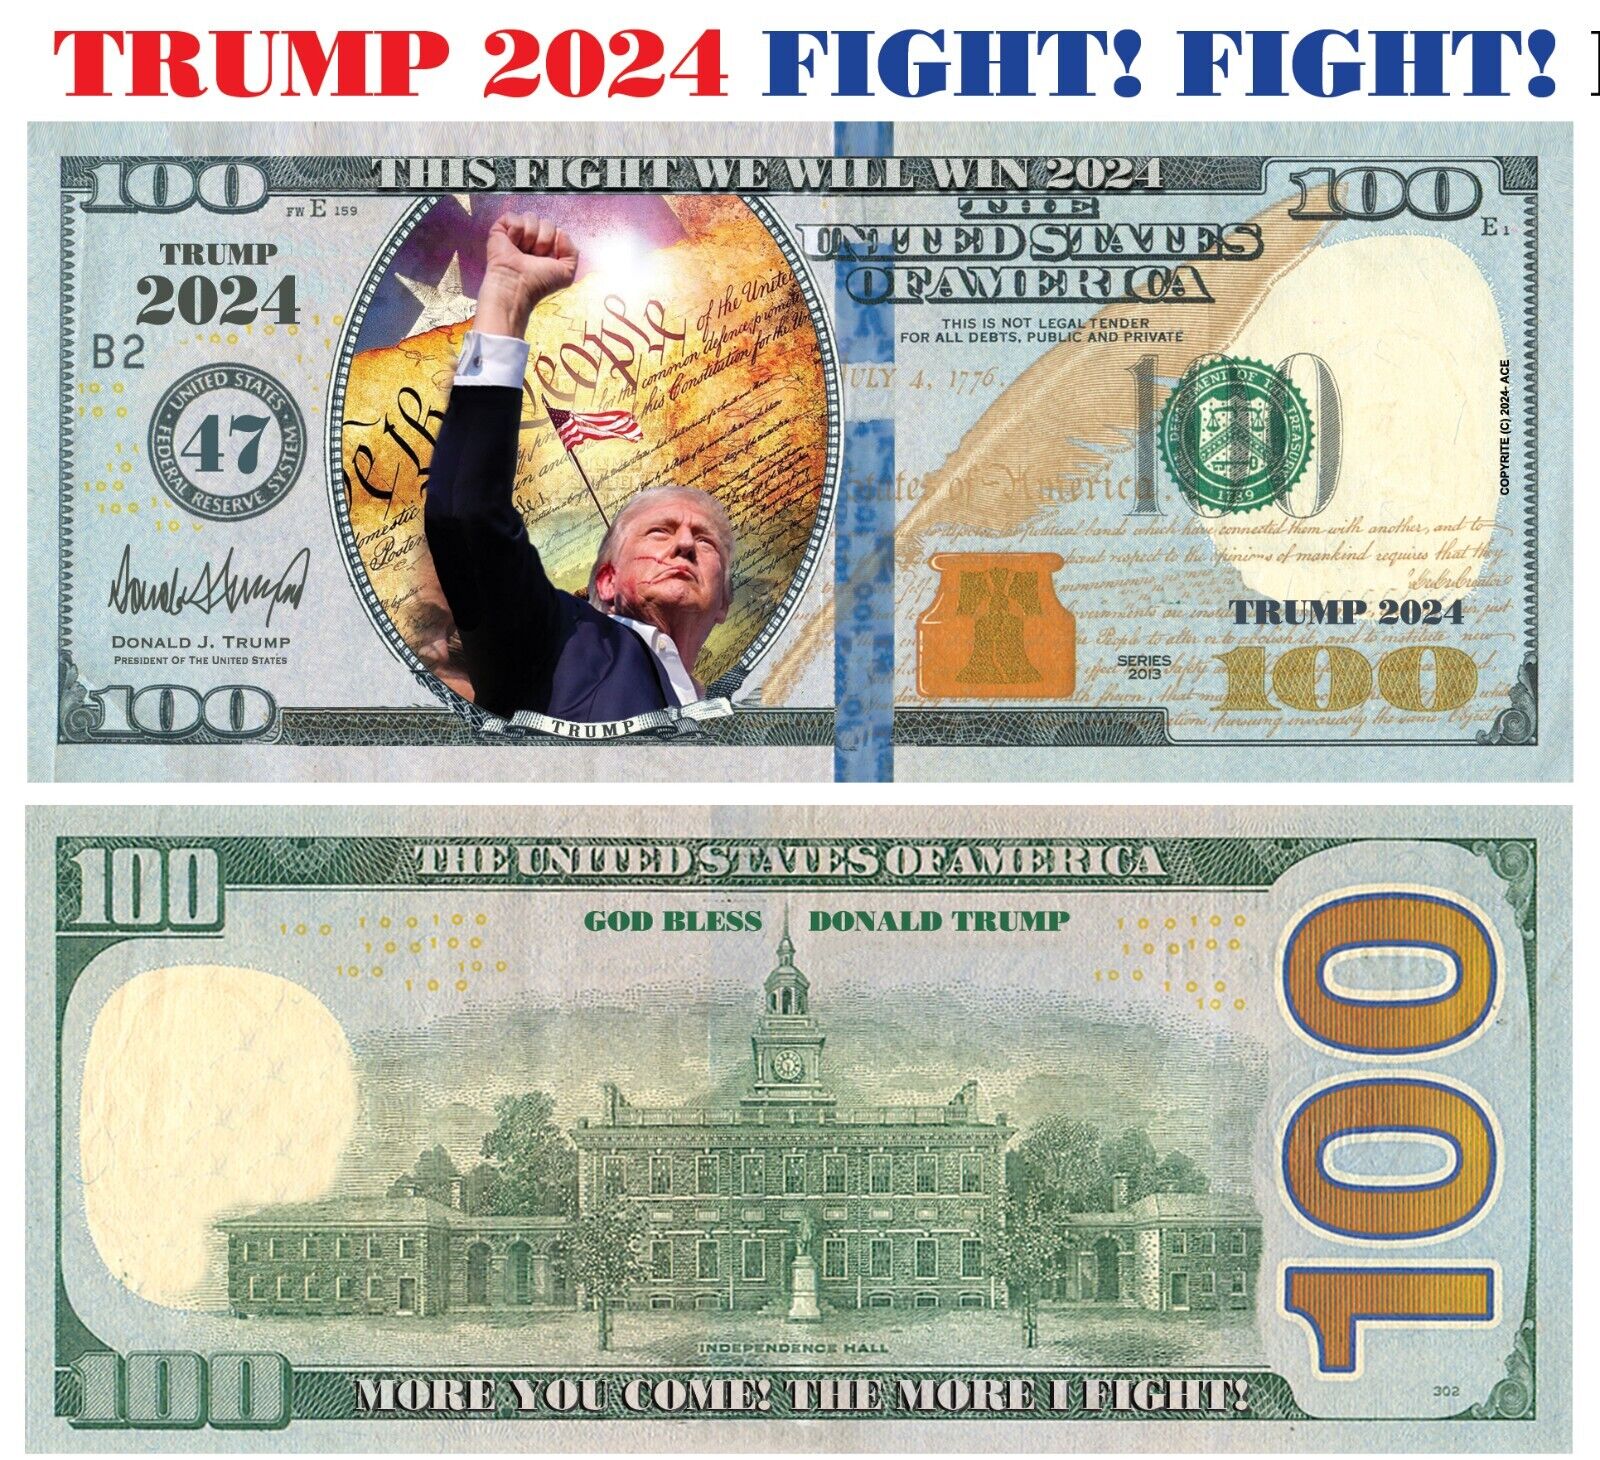 100 pack TRUMP FIGHT, FIGHT FIGHT 2024 Dollar Bills Funny Money Maga